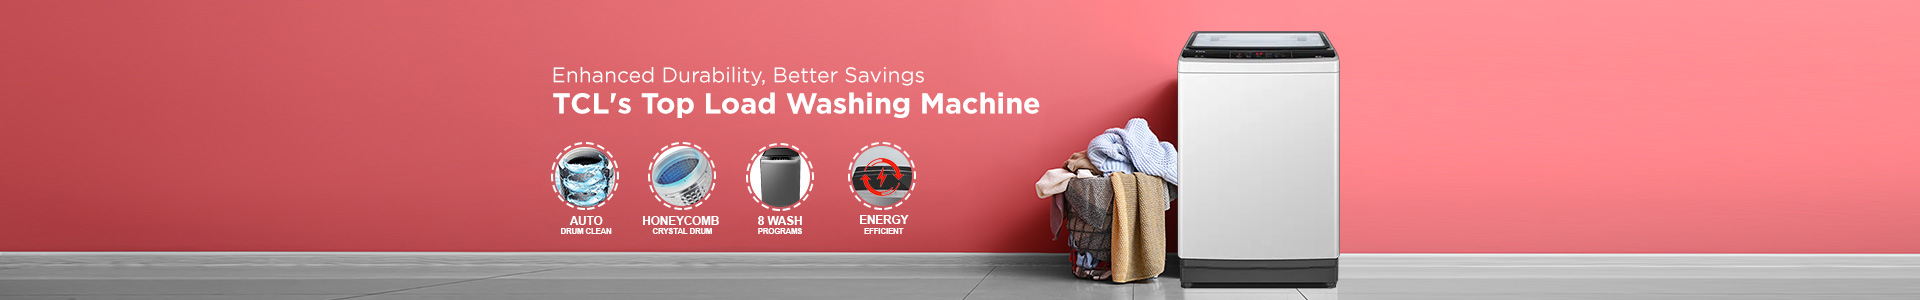 南宫ng·28 Top Load Washine Machines